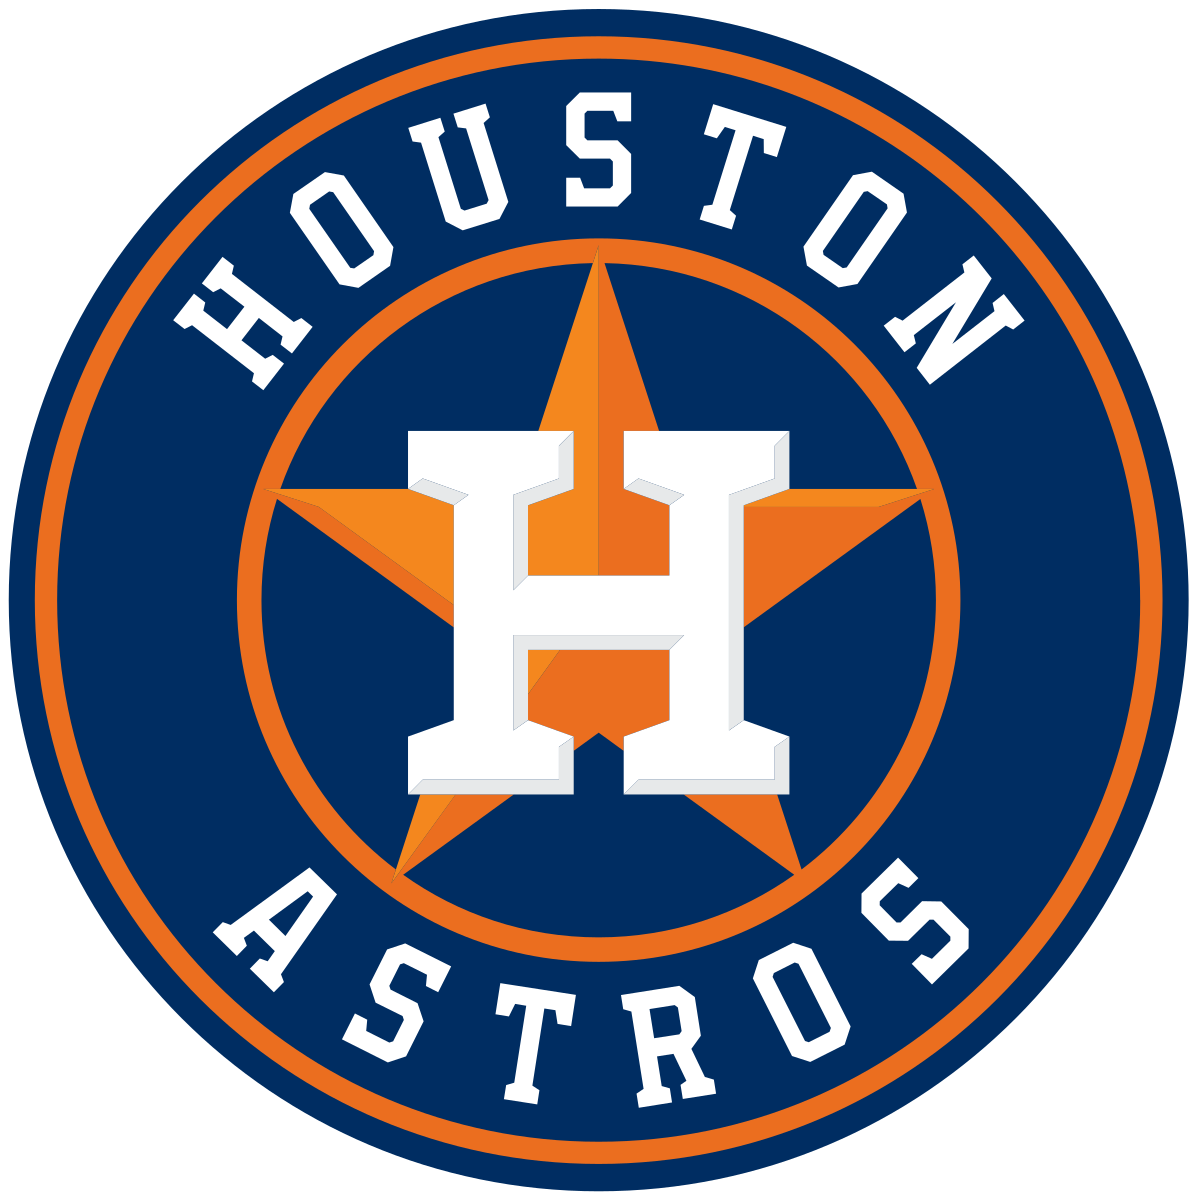 Houston Astros Wikipedia